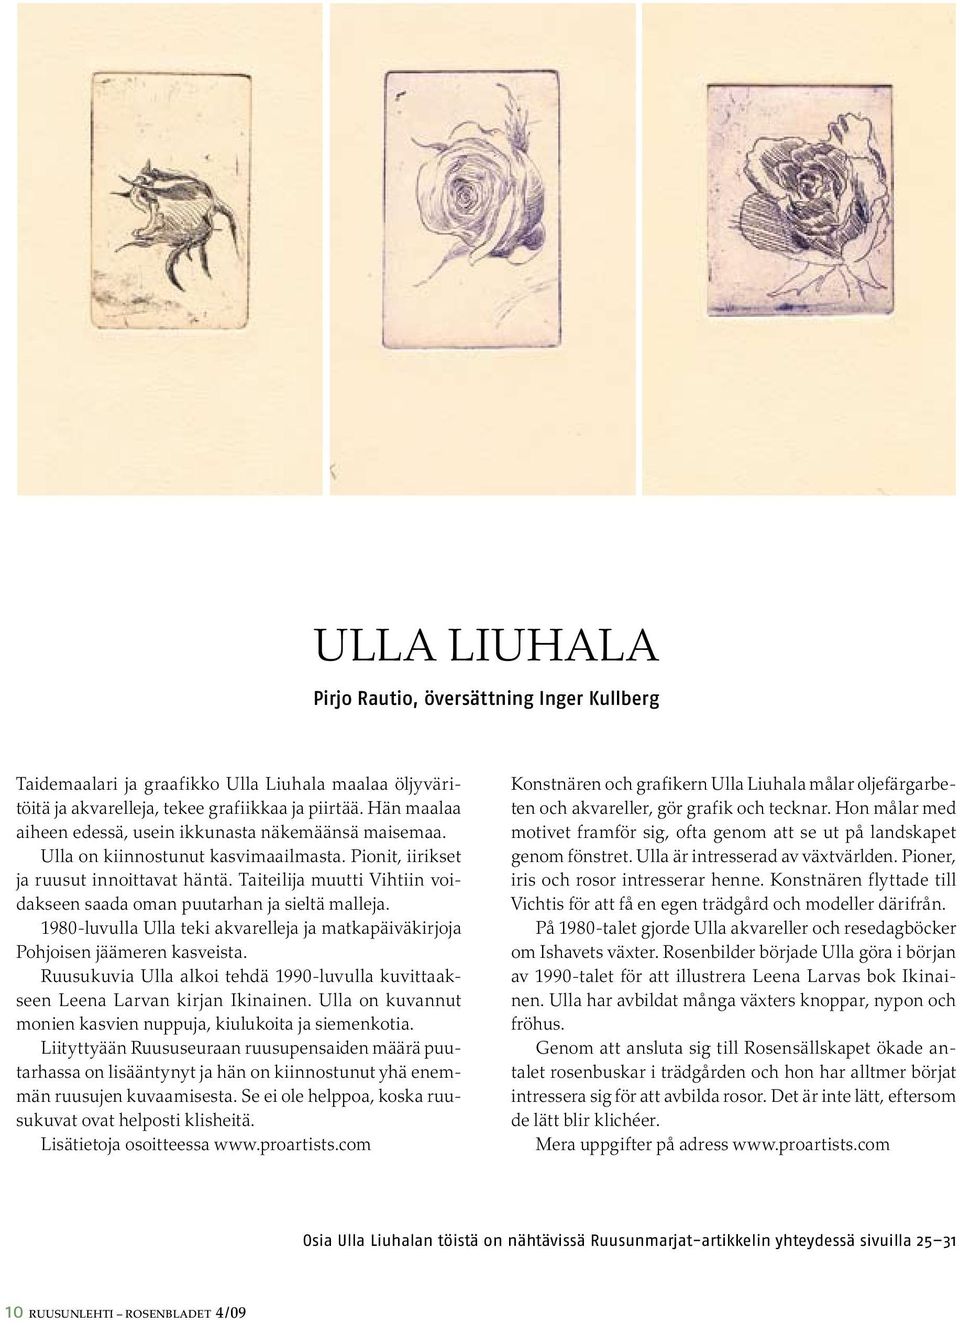 Taiteilija muutti Vihtiin voidakseen saada oman puutarhan ja sieltä malleja. 1980-luvulla Ulla teki akvarelleja ja matkapäiväkirjoja Pohjoisen jäämeren kasveista.